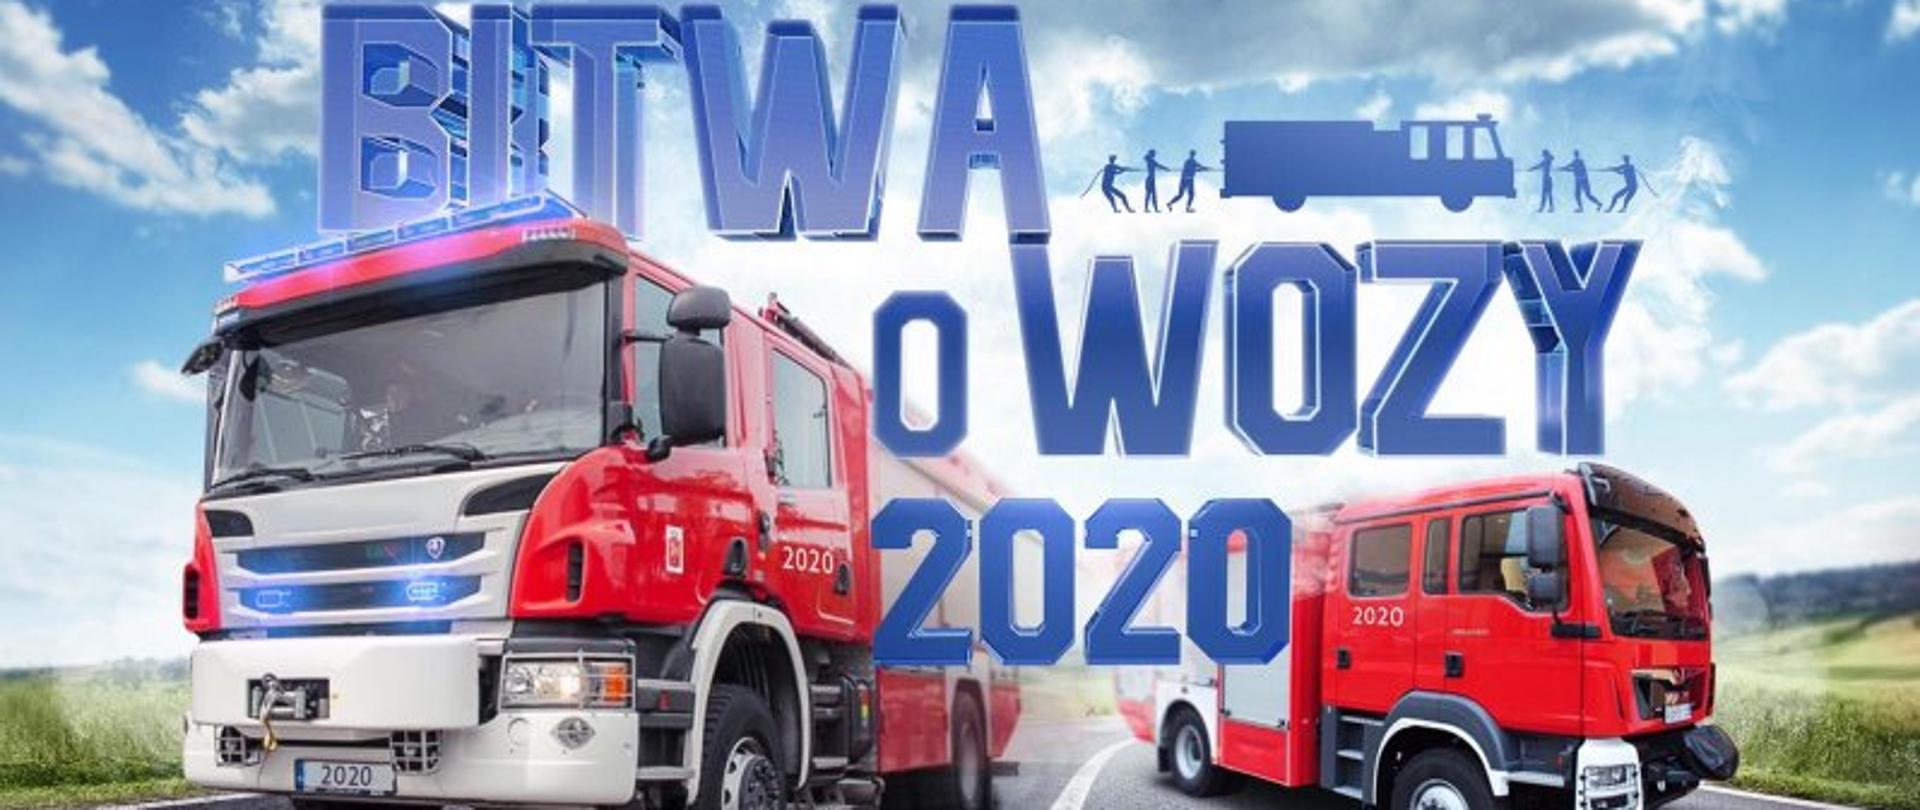 Plakat "Bitwa o Wozy 2020"